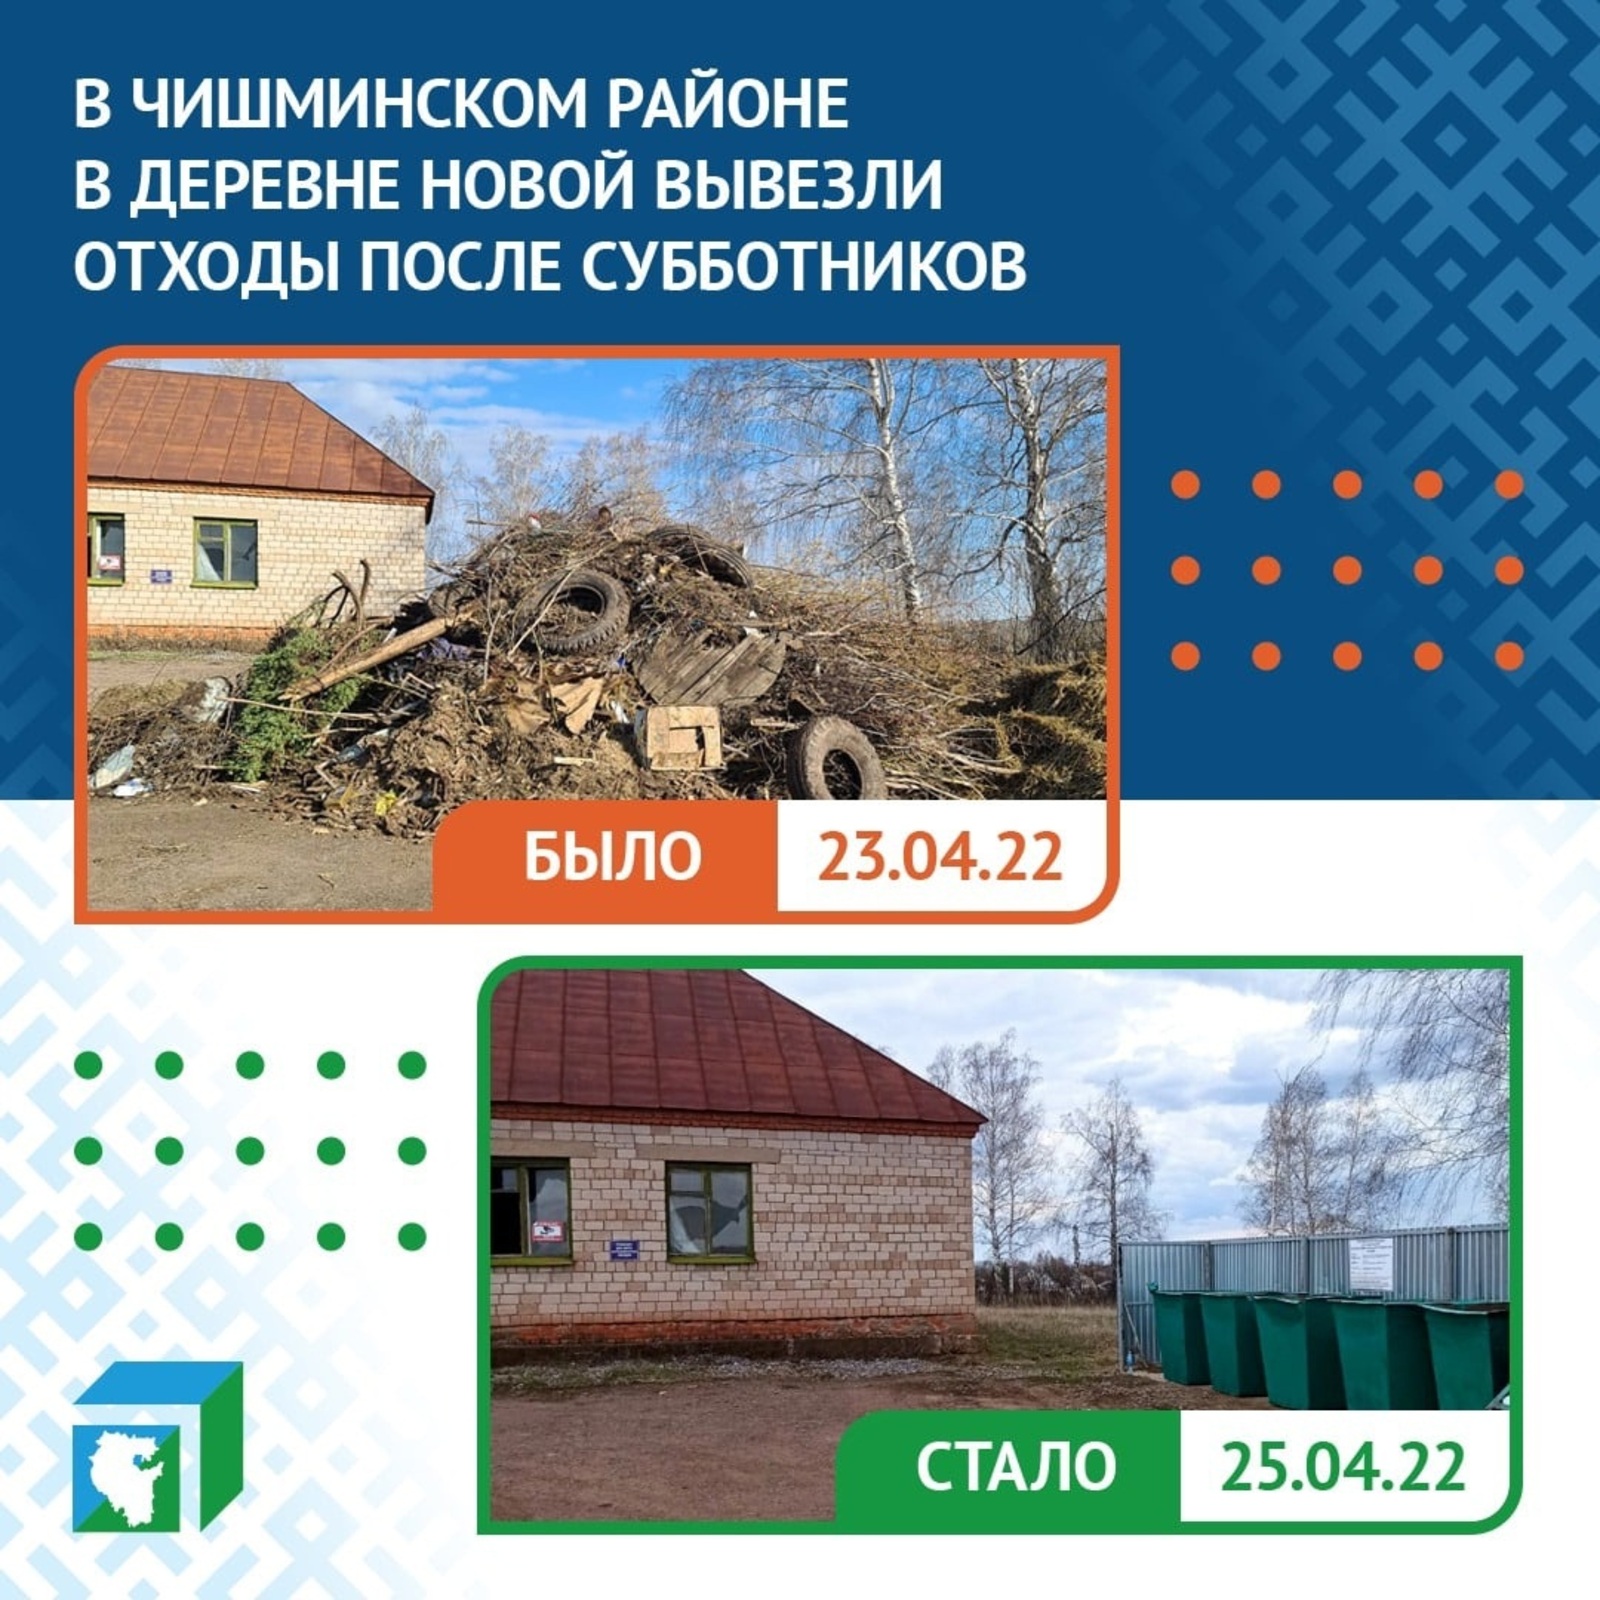 ЦУР Башкирии помог очистить от мусора две деревни